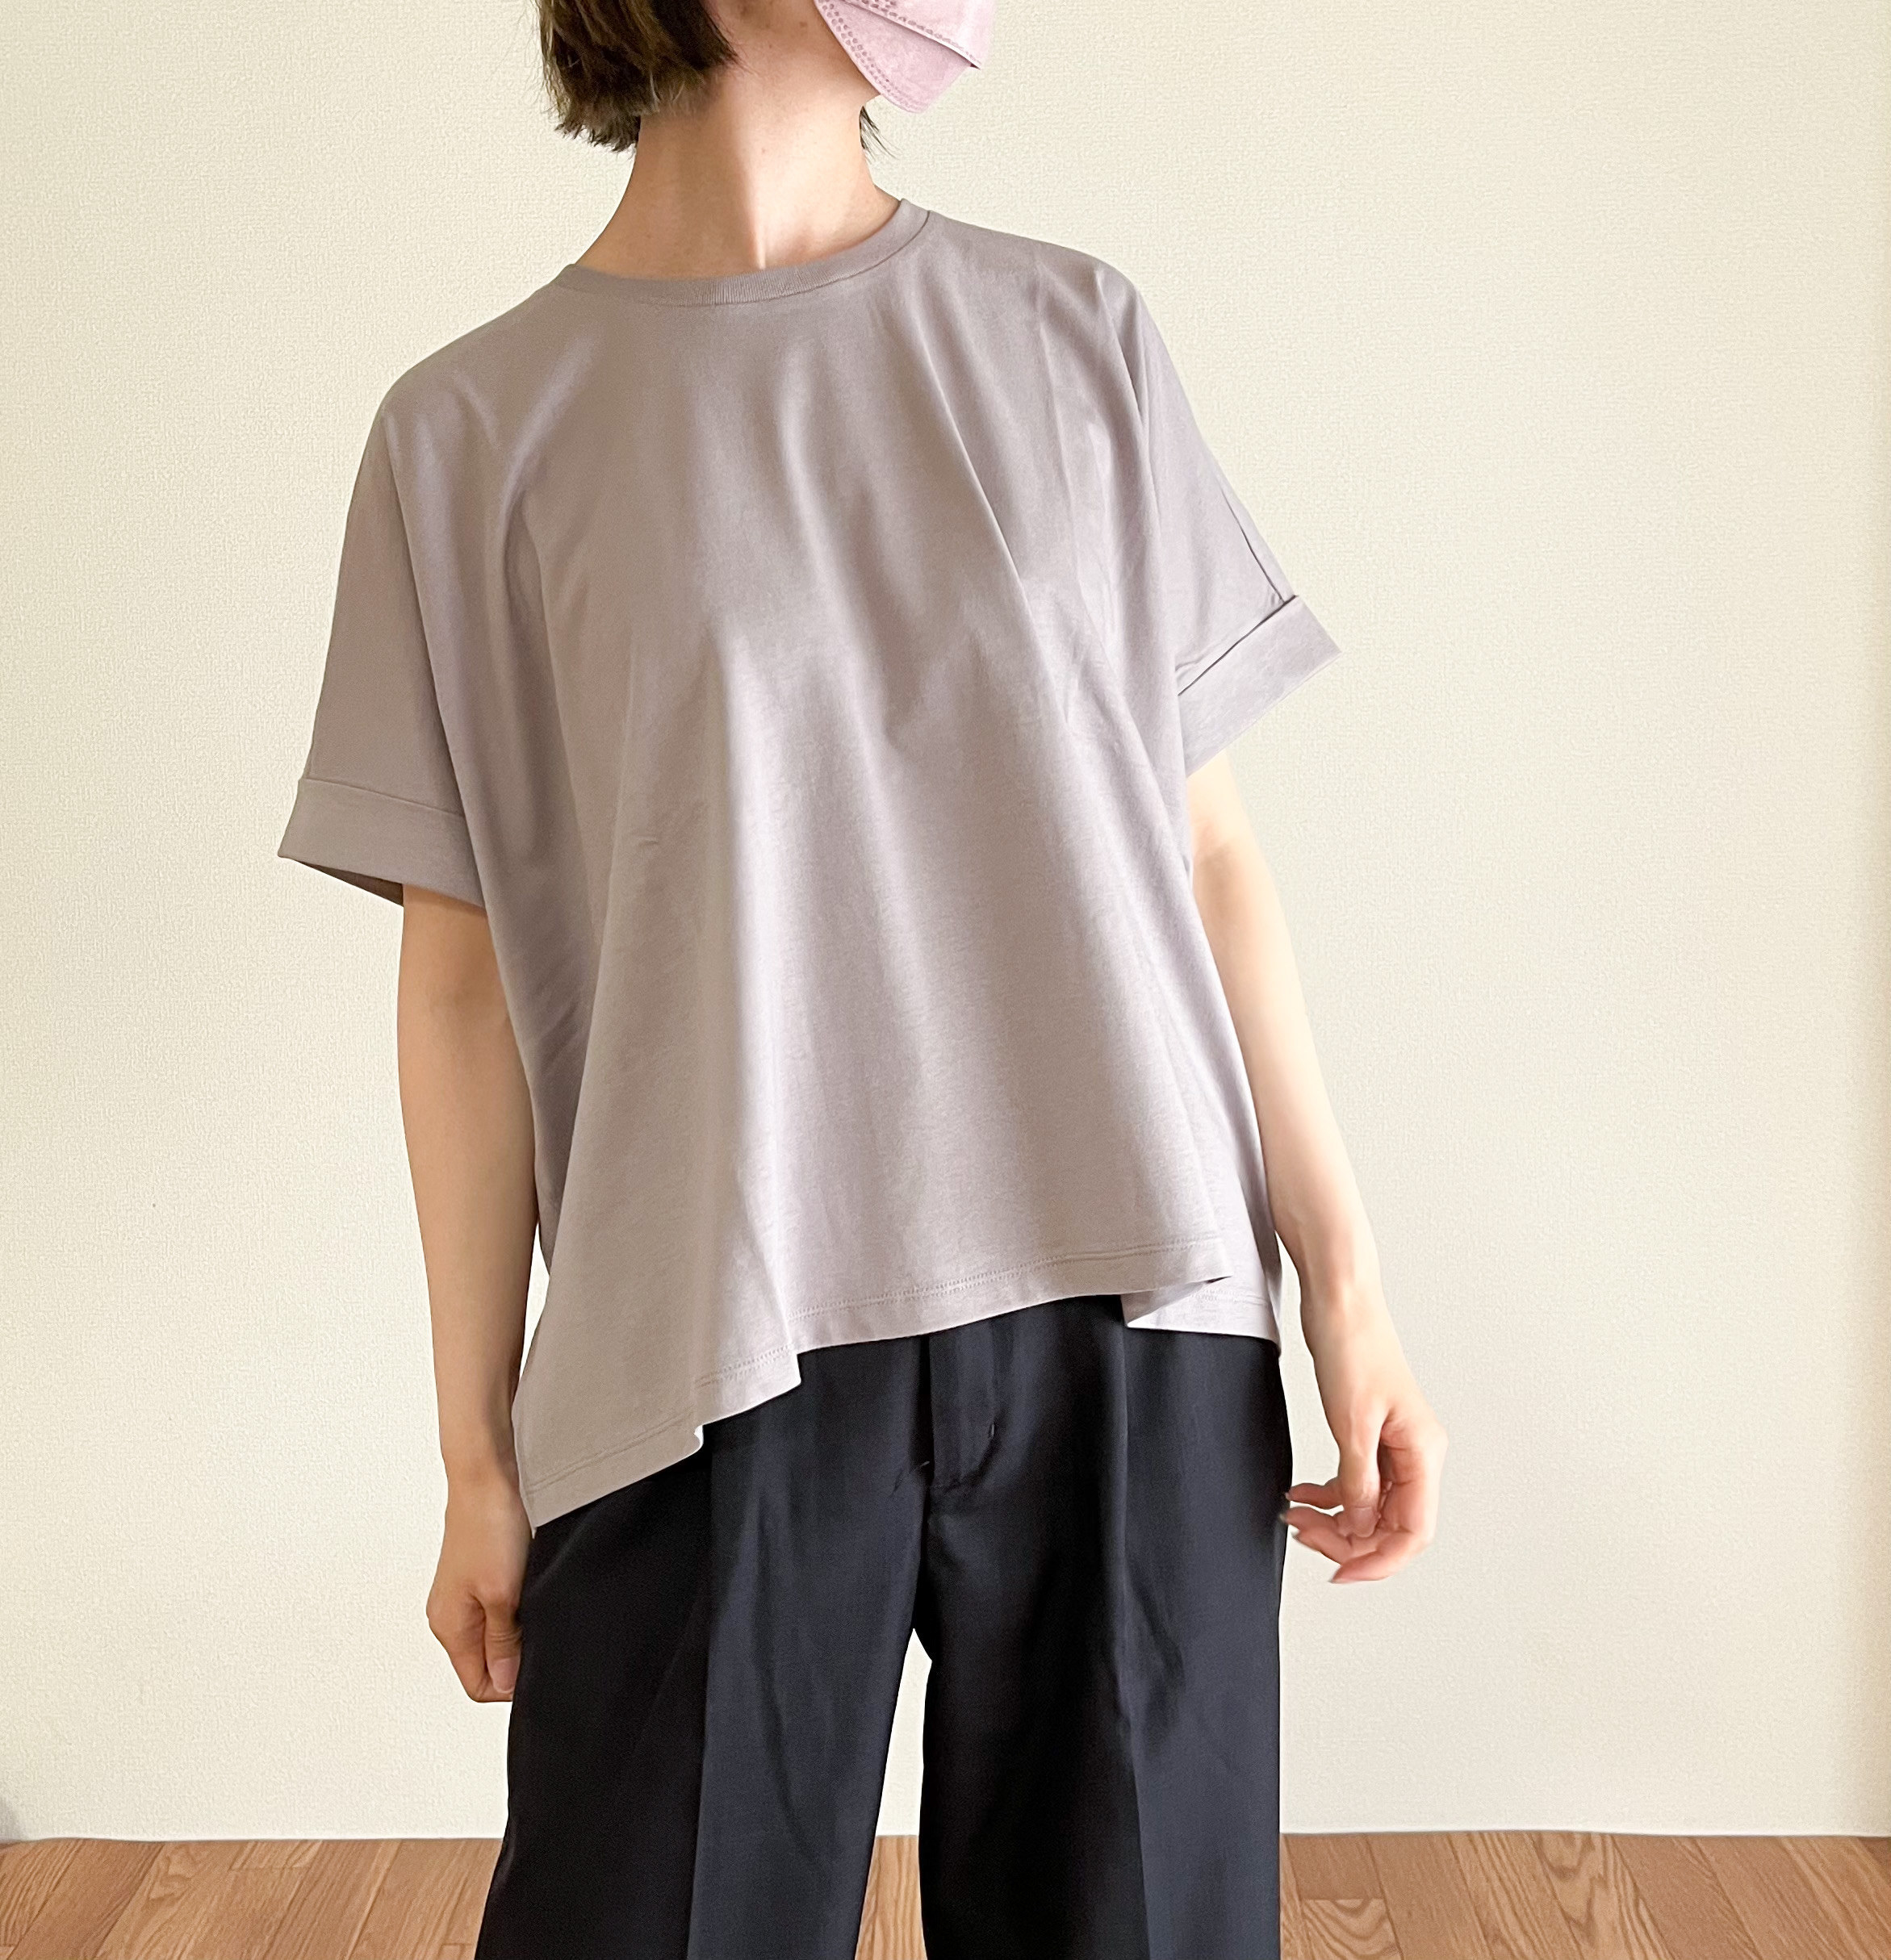 ★UNIQLO（ユニクロ）の新作Tシャツ「コットンオーバーサイズT（半袖）」トレンドのシルエットで夏におすすめ